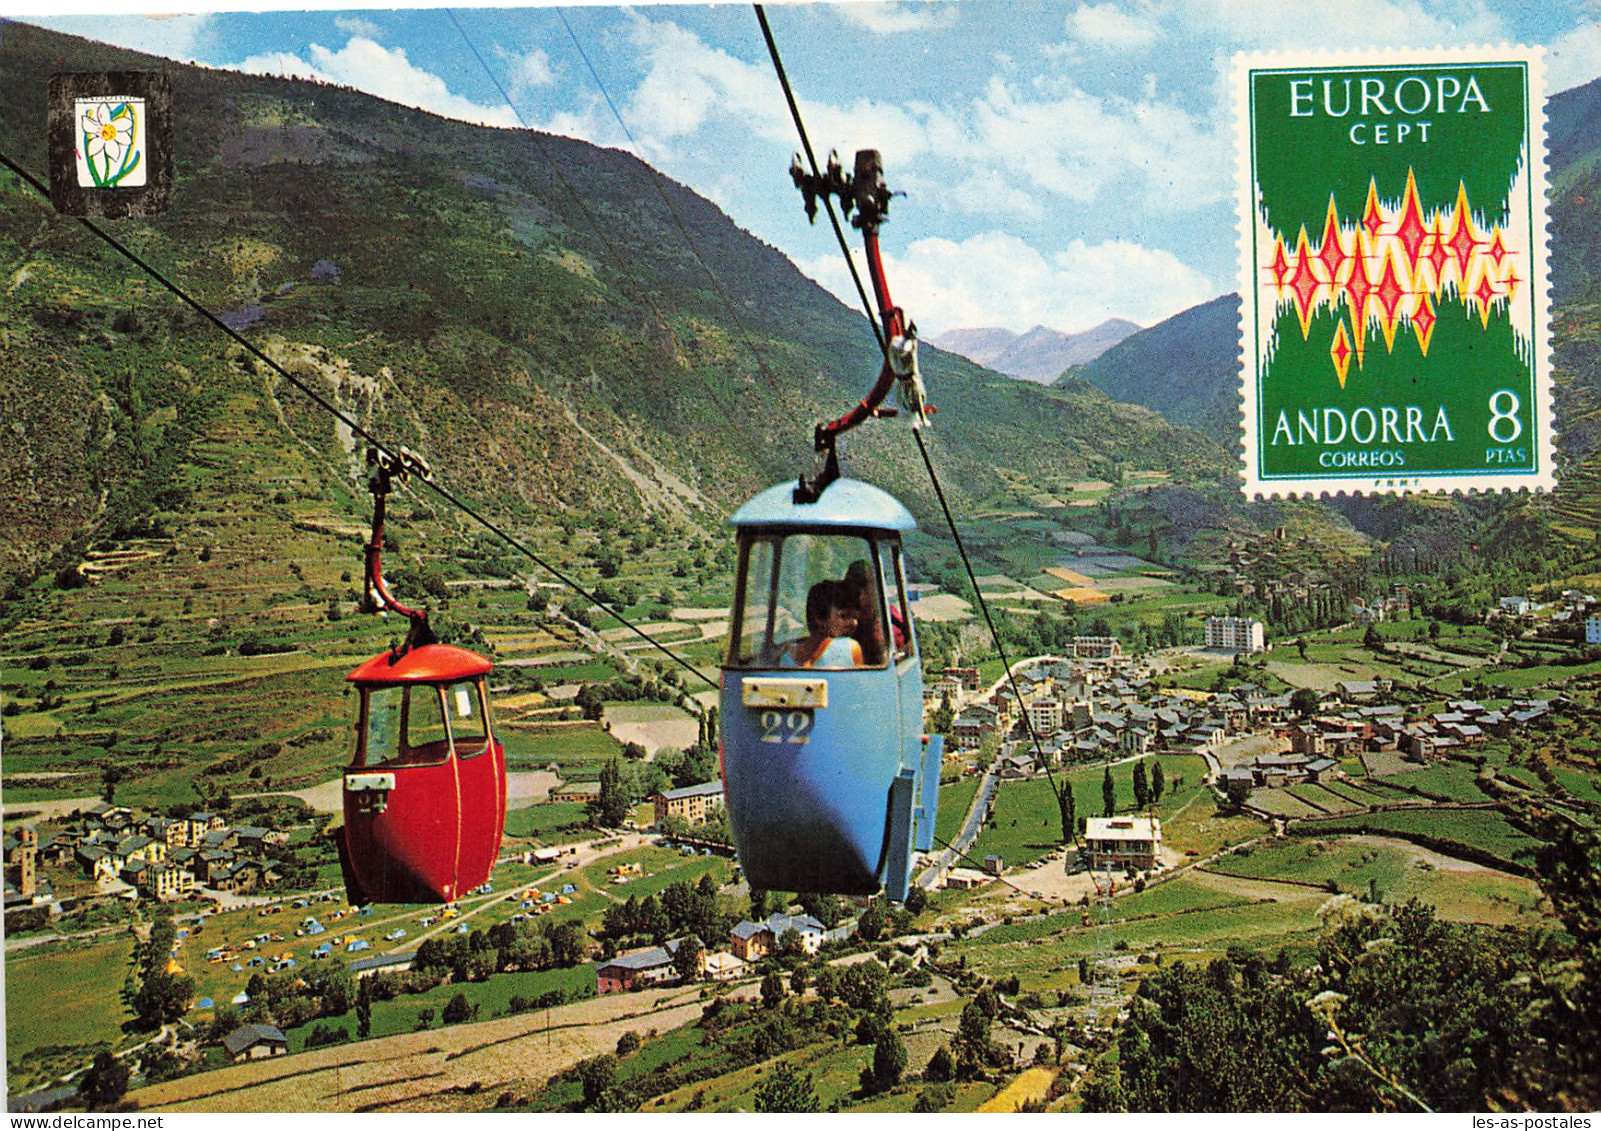 ANDORRE ENCAMP - Andorra